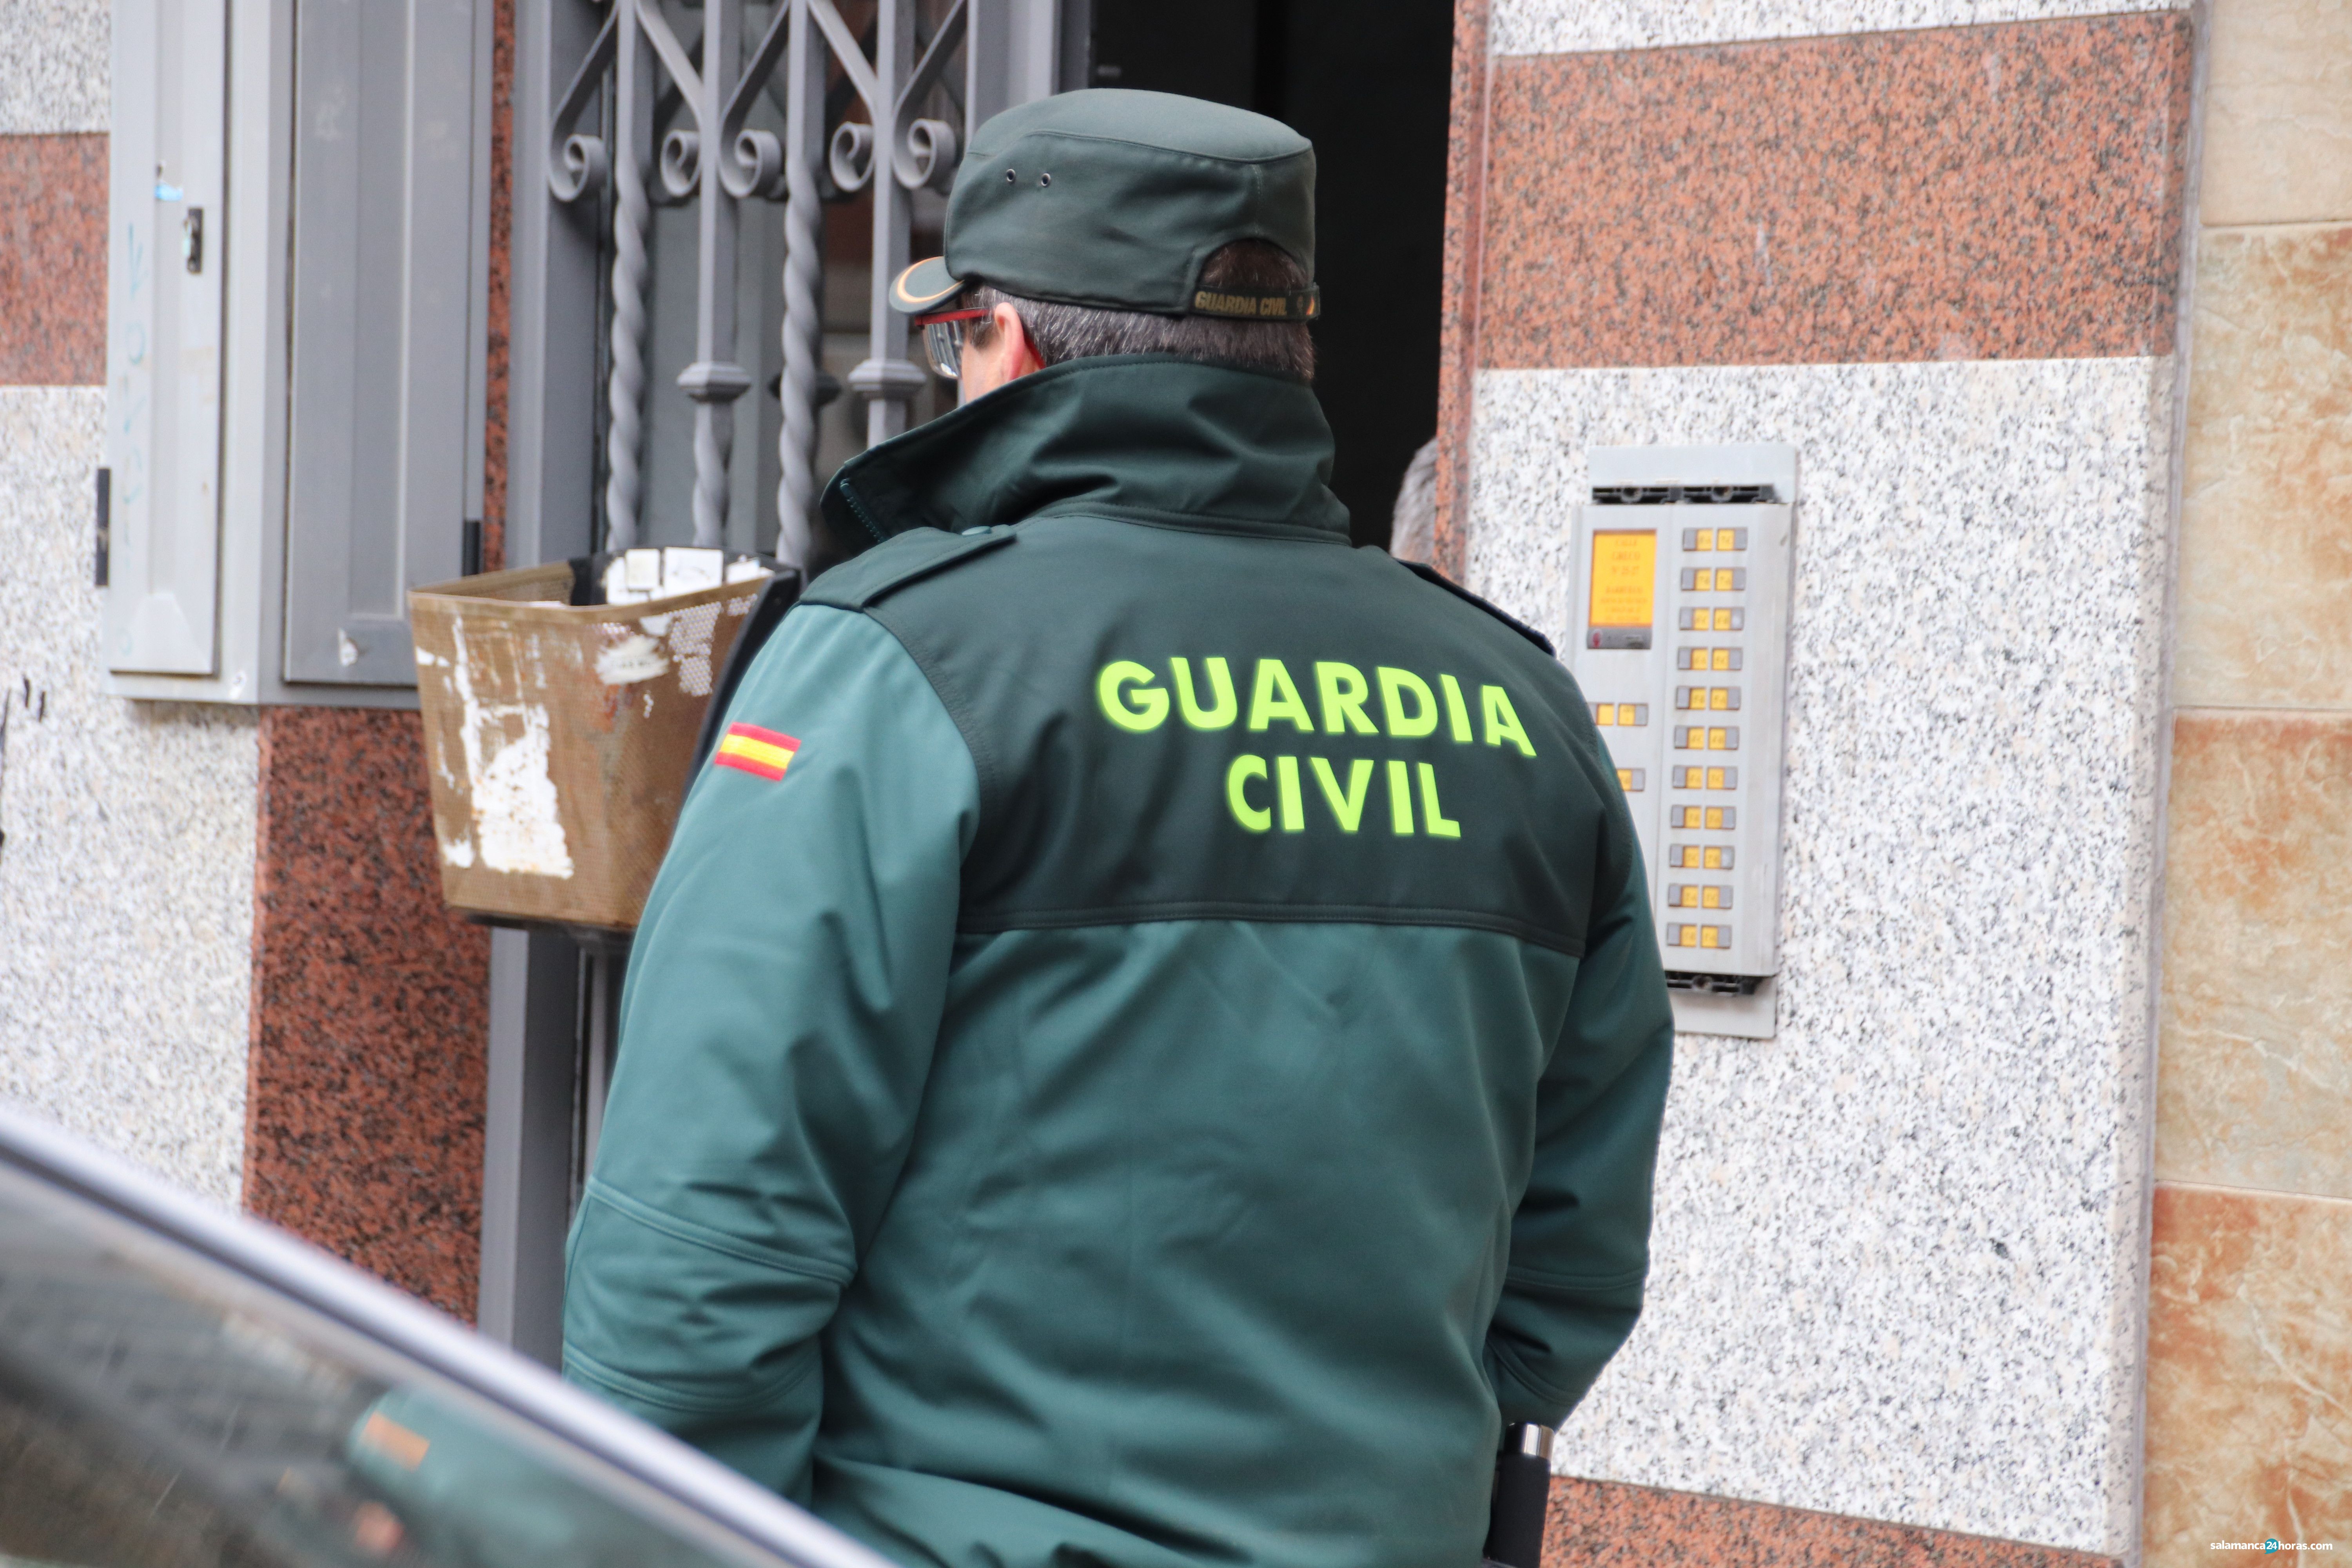  Guardia Civil Redada en el Greco (14) 